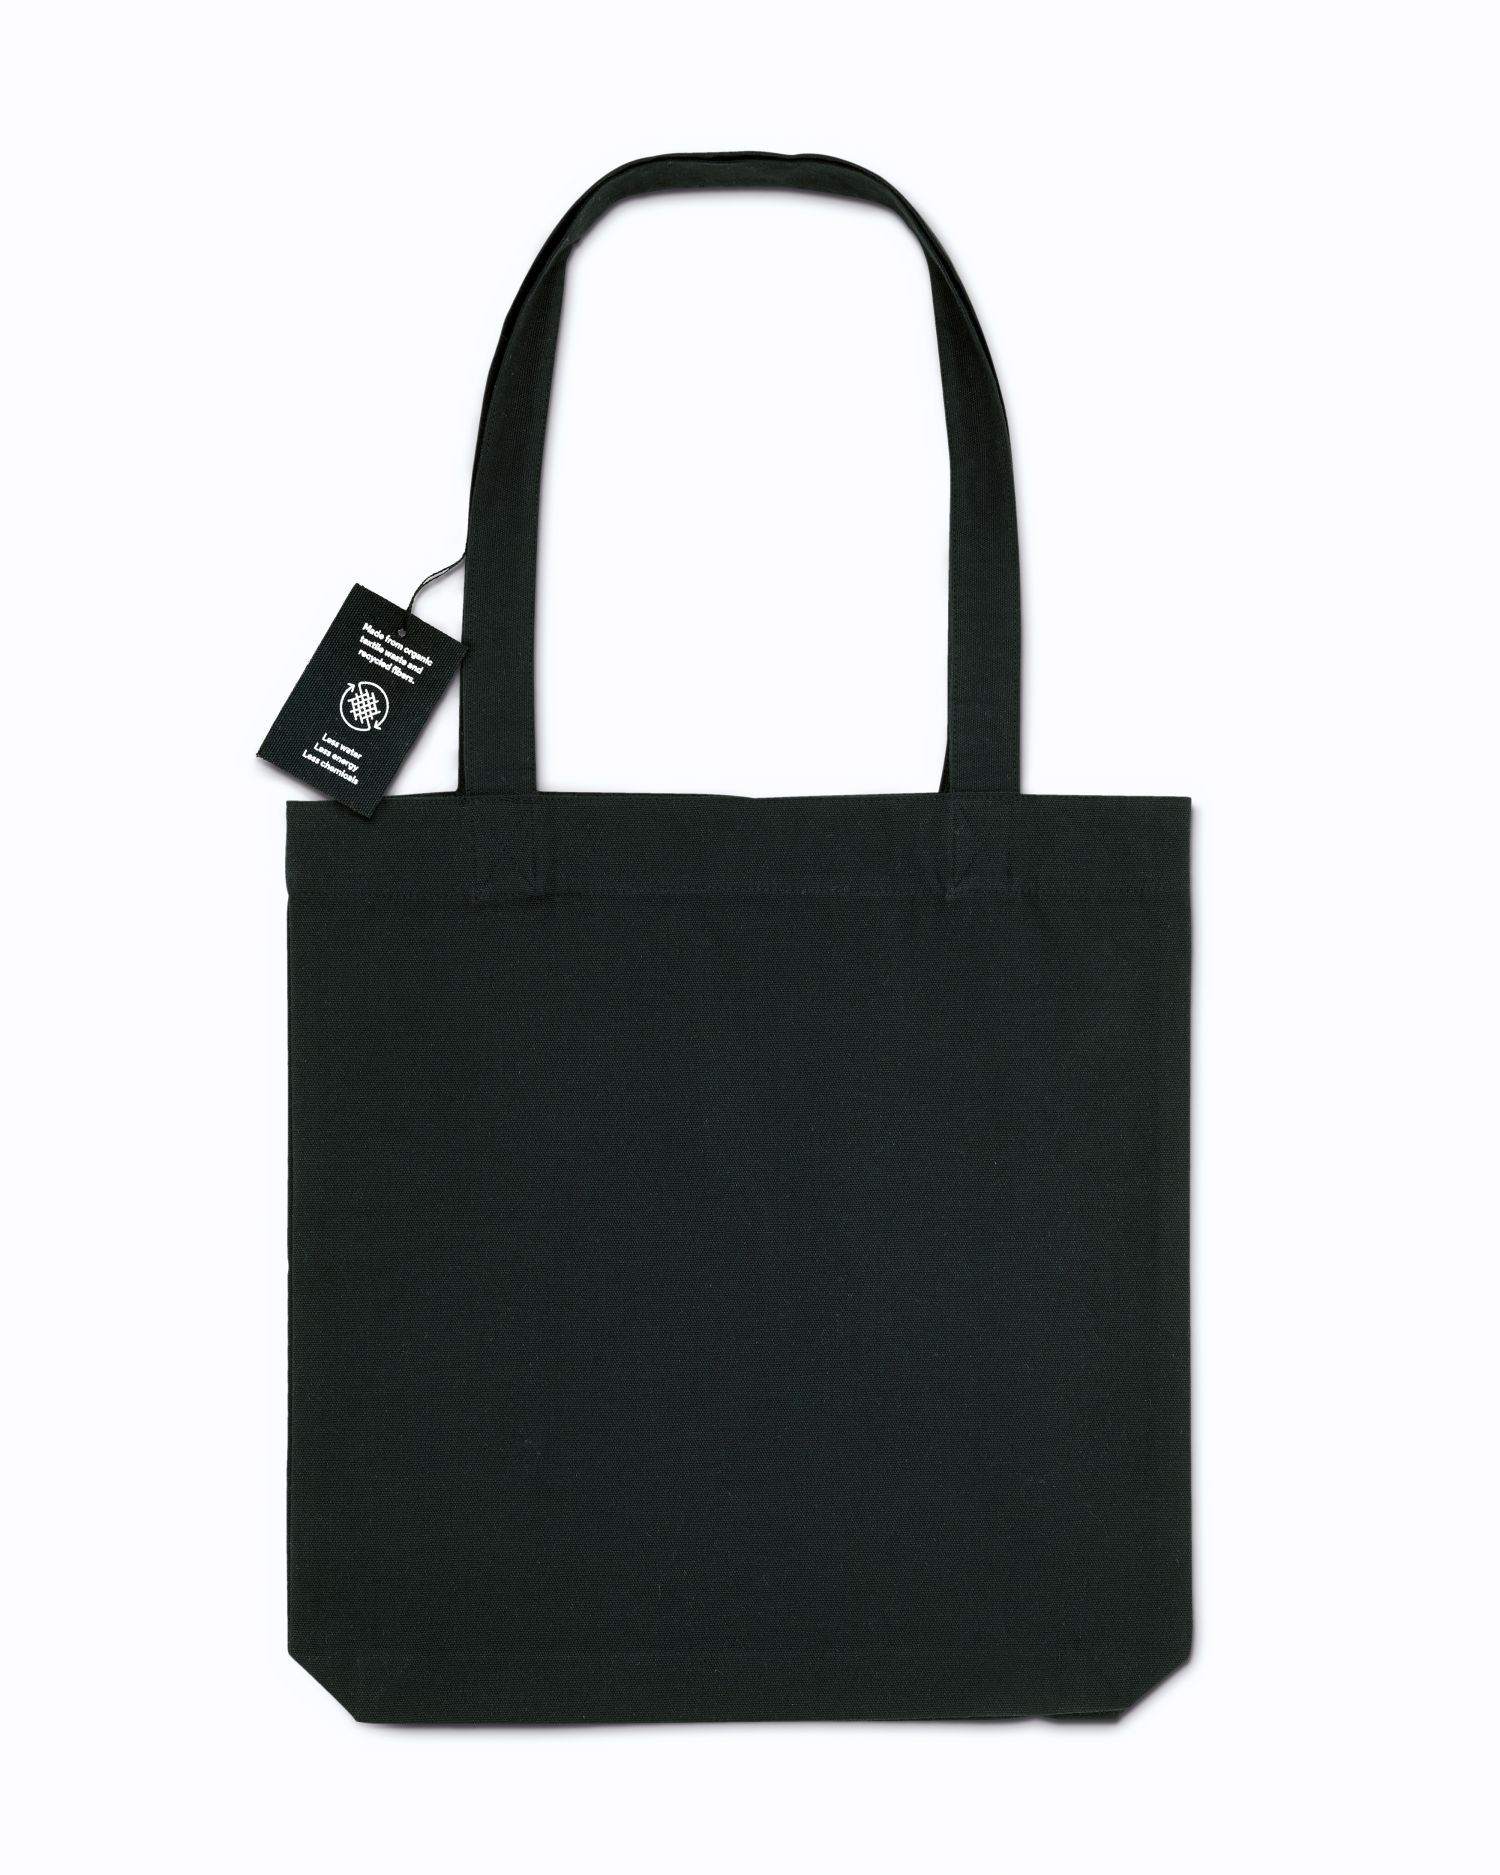  RE-Tote Bag in Farbe Black